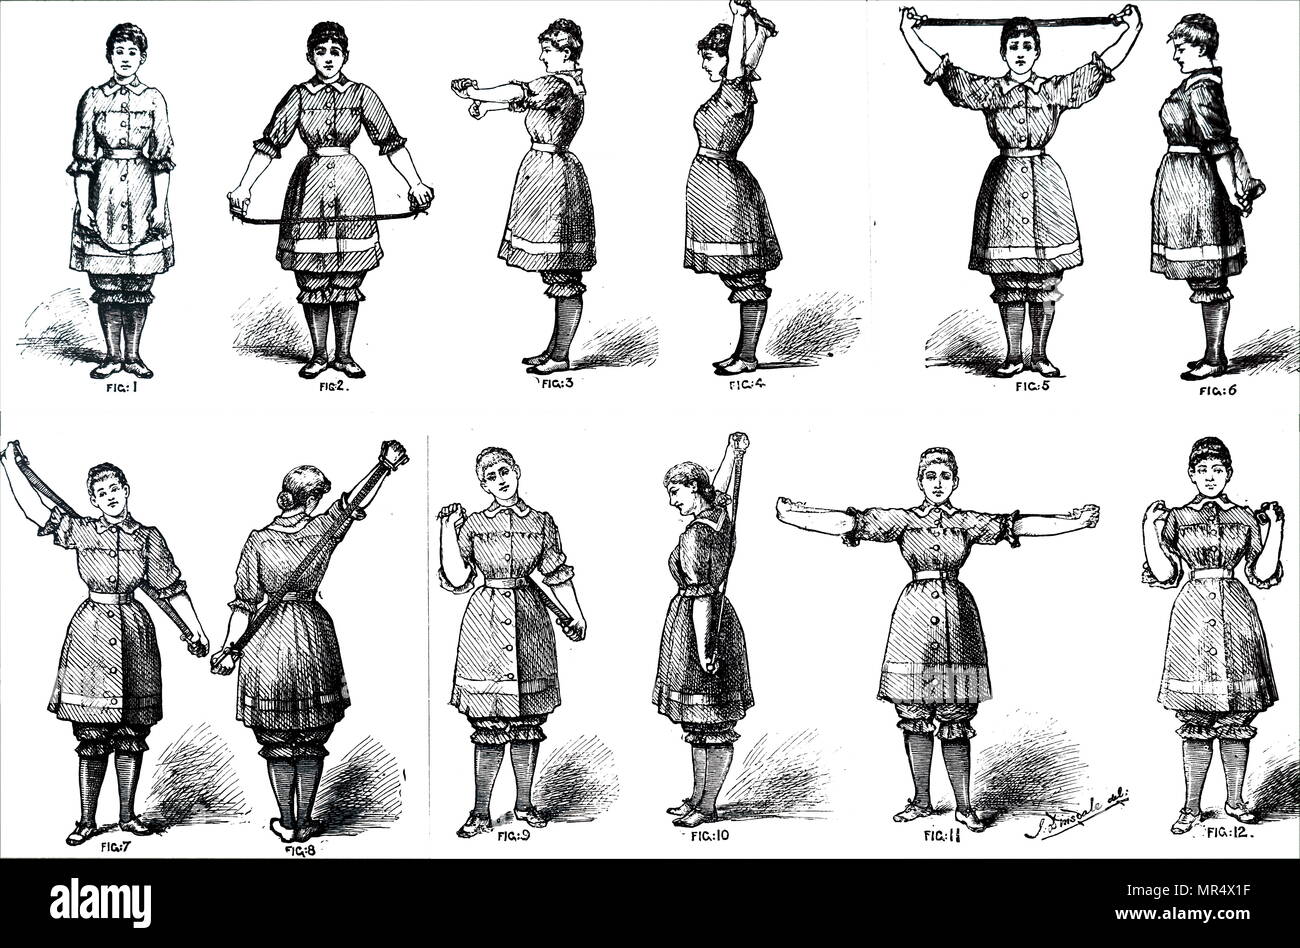 Diagramm, Calisthenics für Mädchen. Mit Hilfe einer Brust Expander", bei der der Chirurg mechanisten oder Indien produziert werden können - Gummi Lager'. Vom 19. Jahrhundert Stockfoto